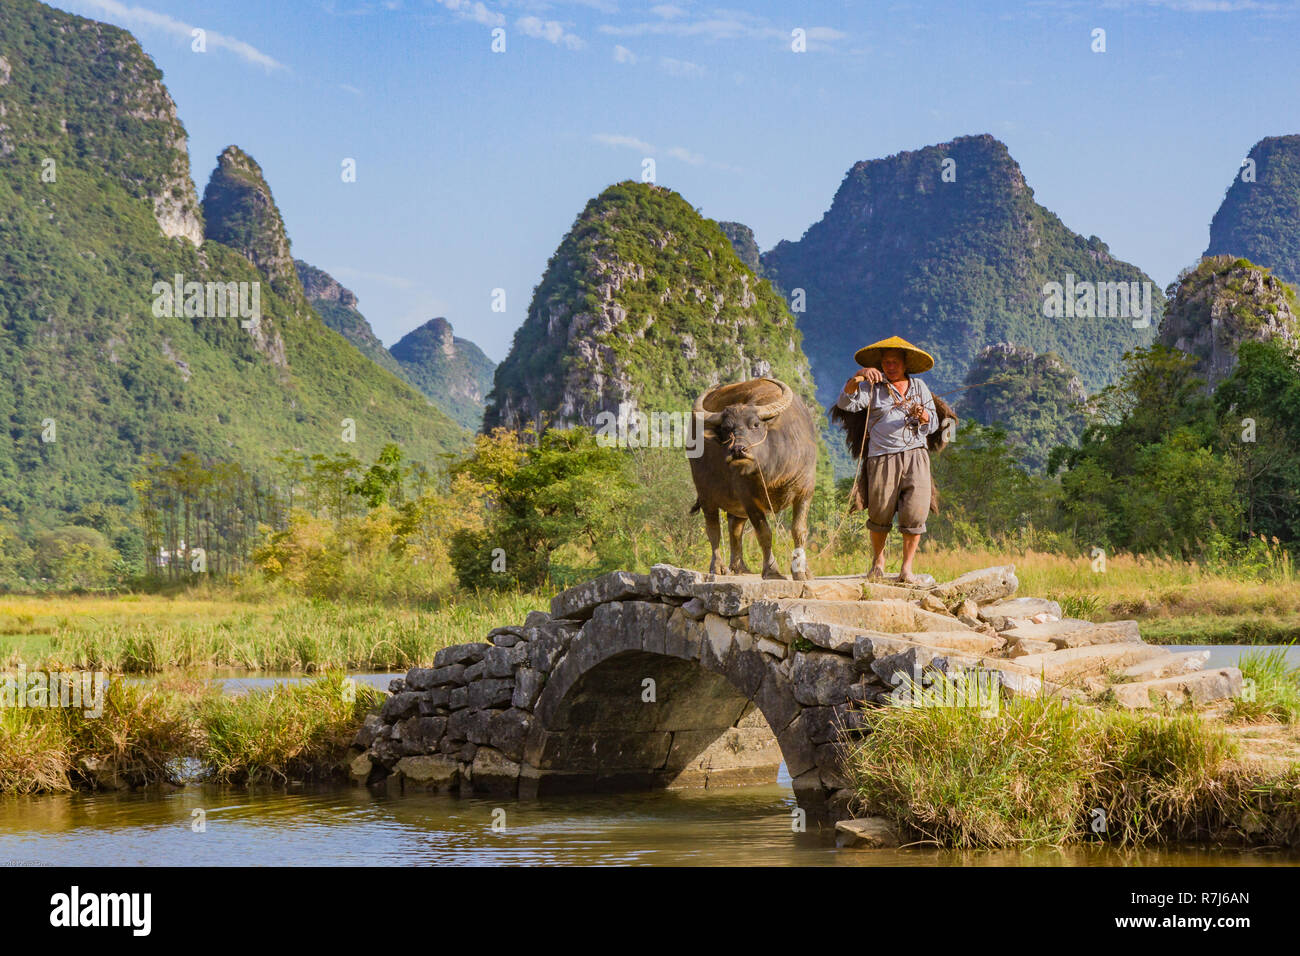 L'agricoltore cinese con il bufalo d'acqua sul ponte di pietra nella pittoresca valle circondata da ambiente carsico di colline in Huixian, Cina. Foto Stock